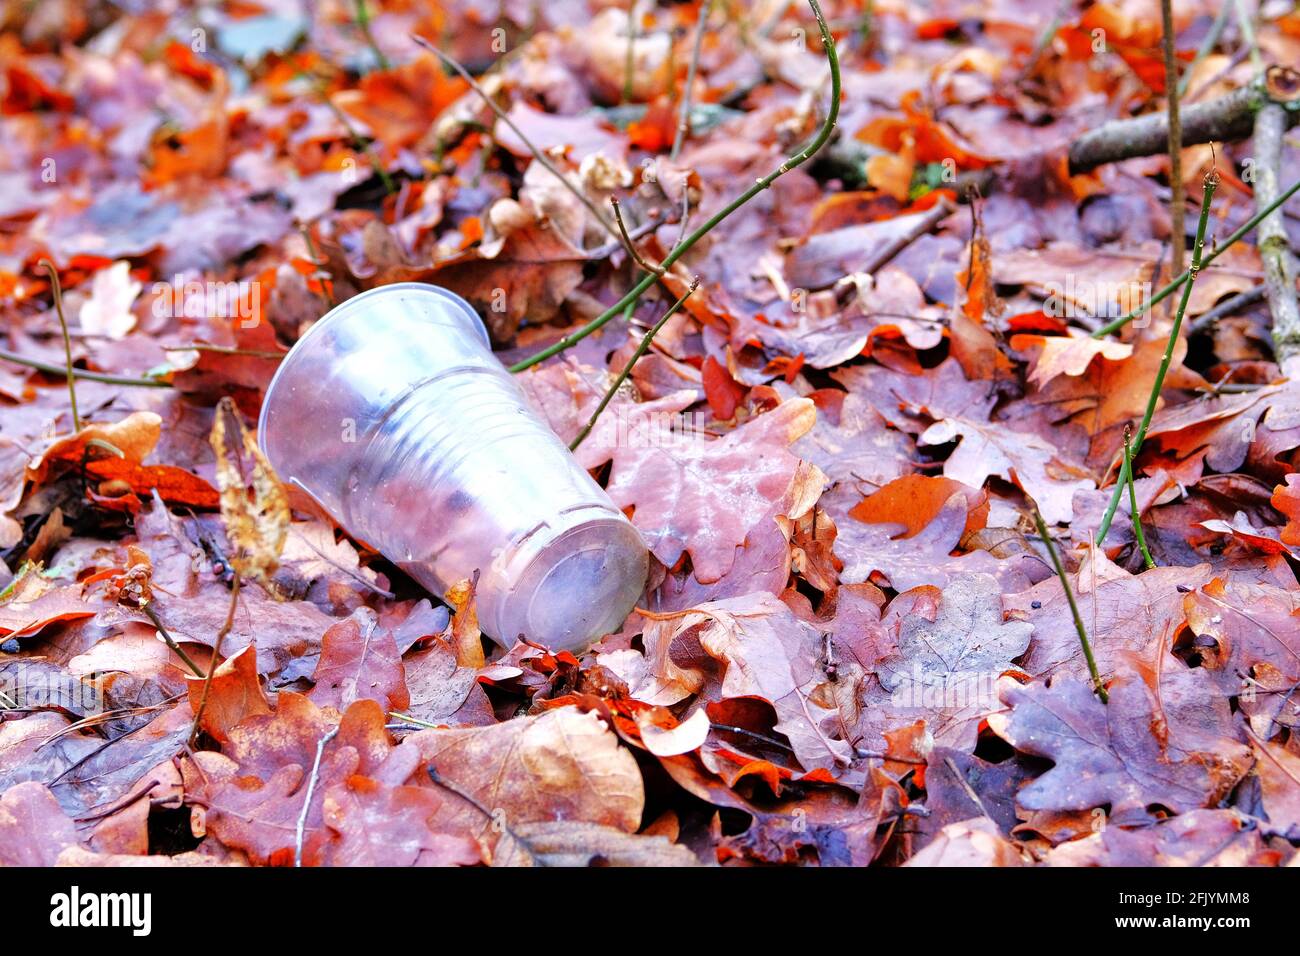 Plastikbecher, der im Nadelwald herumliegt. Umweltverschmutzung durch Hausmüll. Сoncept von Müllproblemen und Recycling. Stockfoto